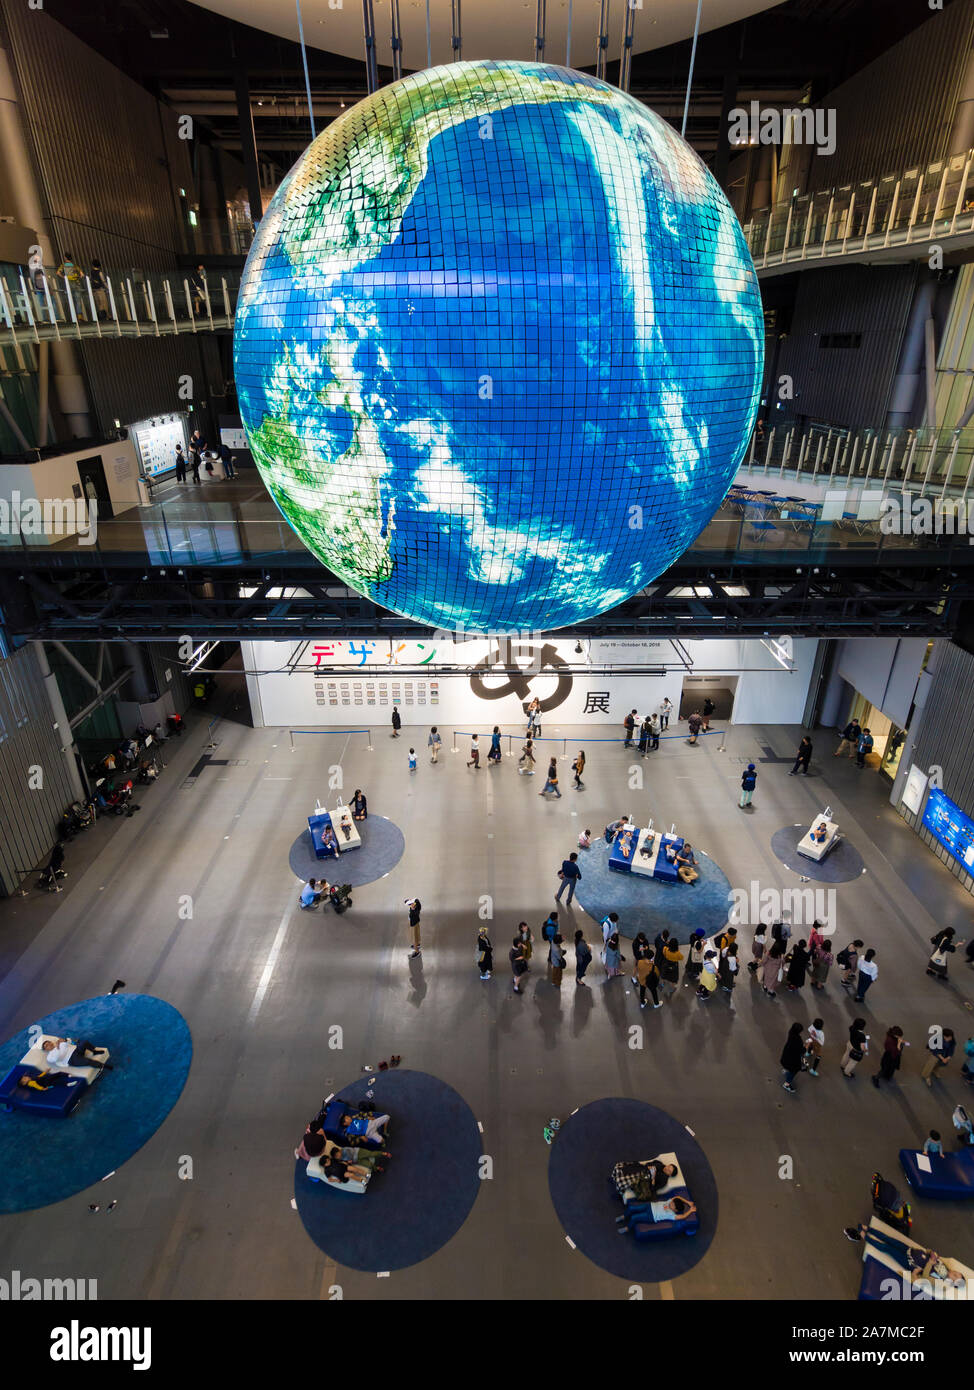 Tokio, Japón - 12 Oct 2018: Geo-Cosmos, un globo gigante colgando del techo en el hall principal de Tokio del Miraikan museo de tecnología. Foto de stock